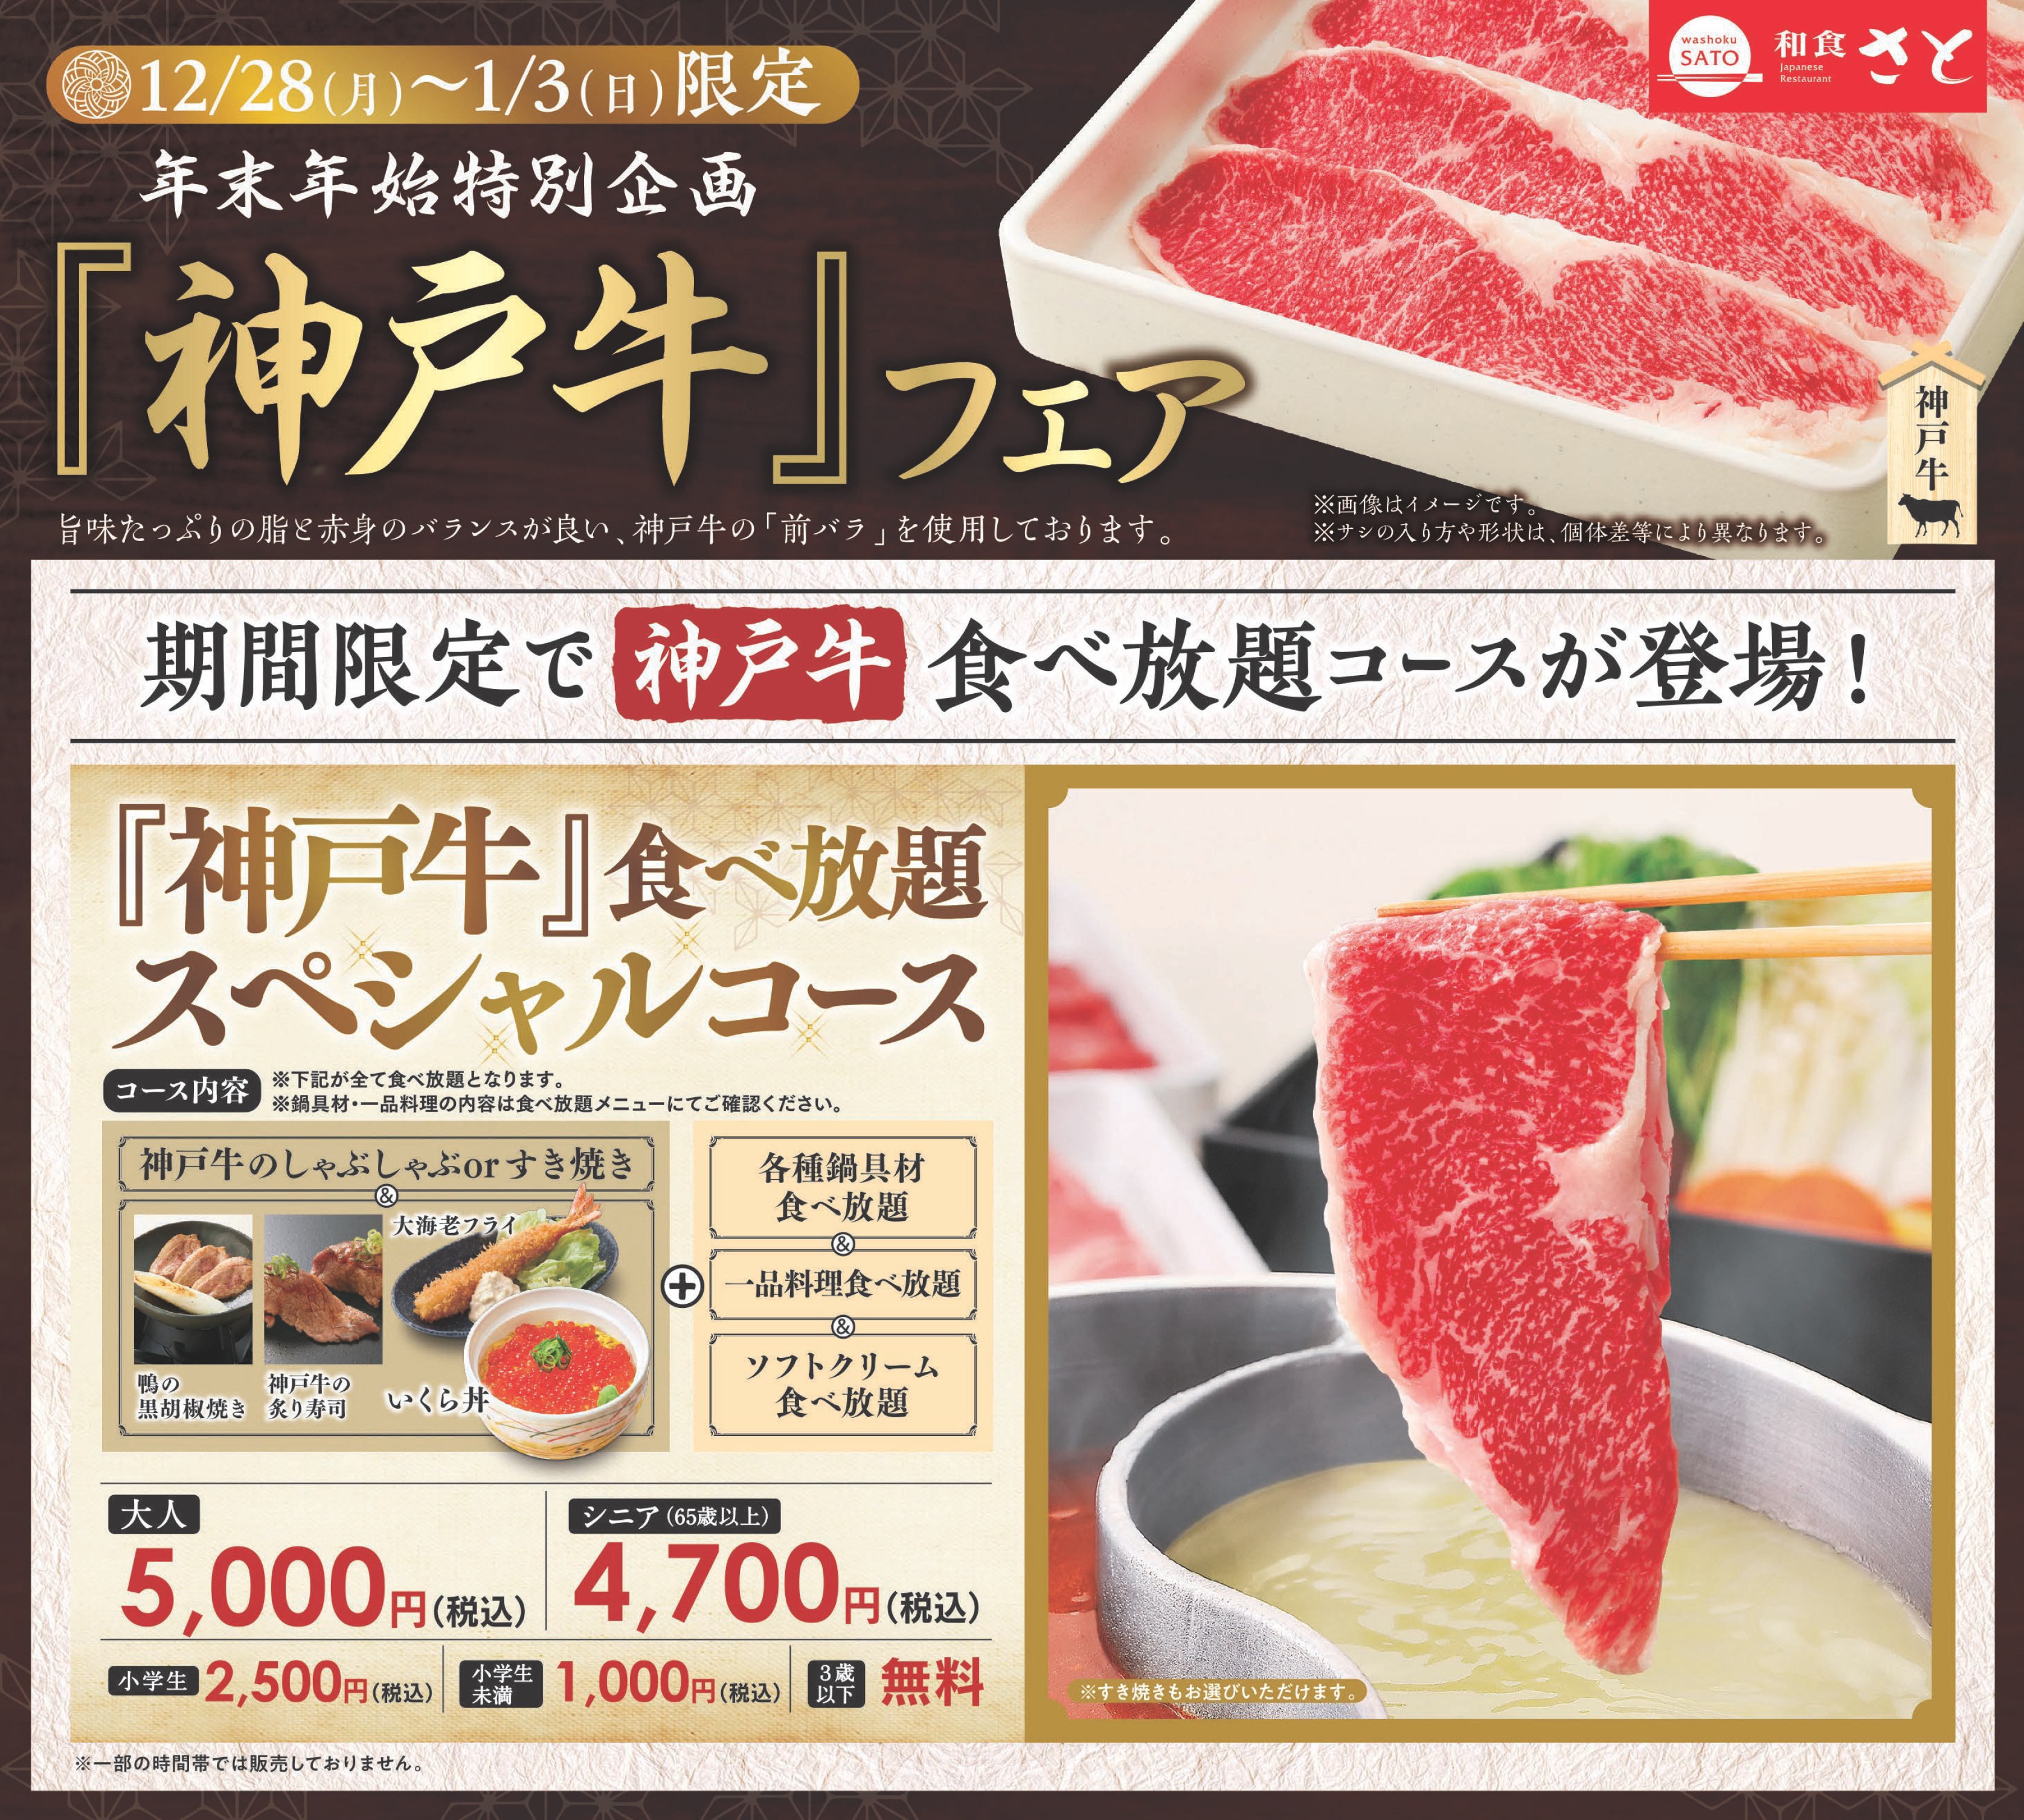 和食さと 年末年始限定 神戸牛フェア 開催 サトフードサービス株式会社のプレスリリース